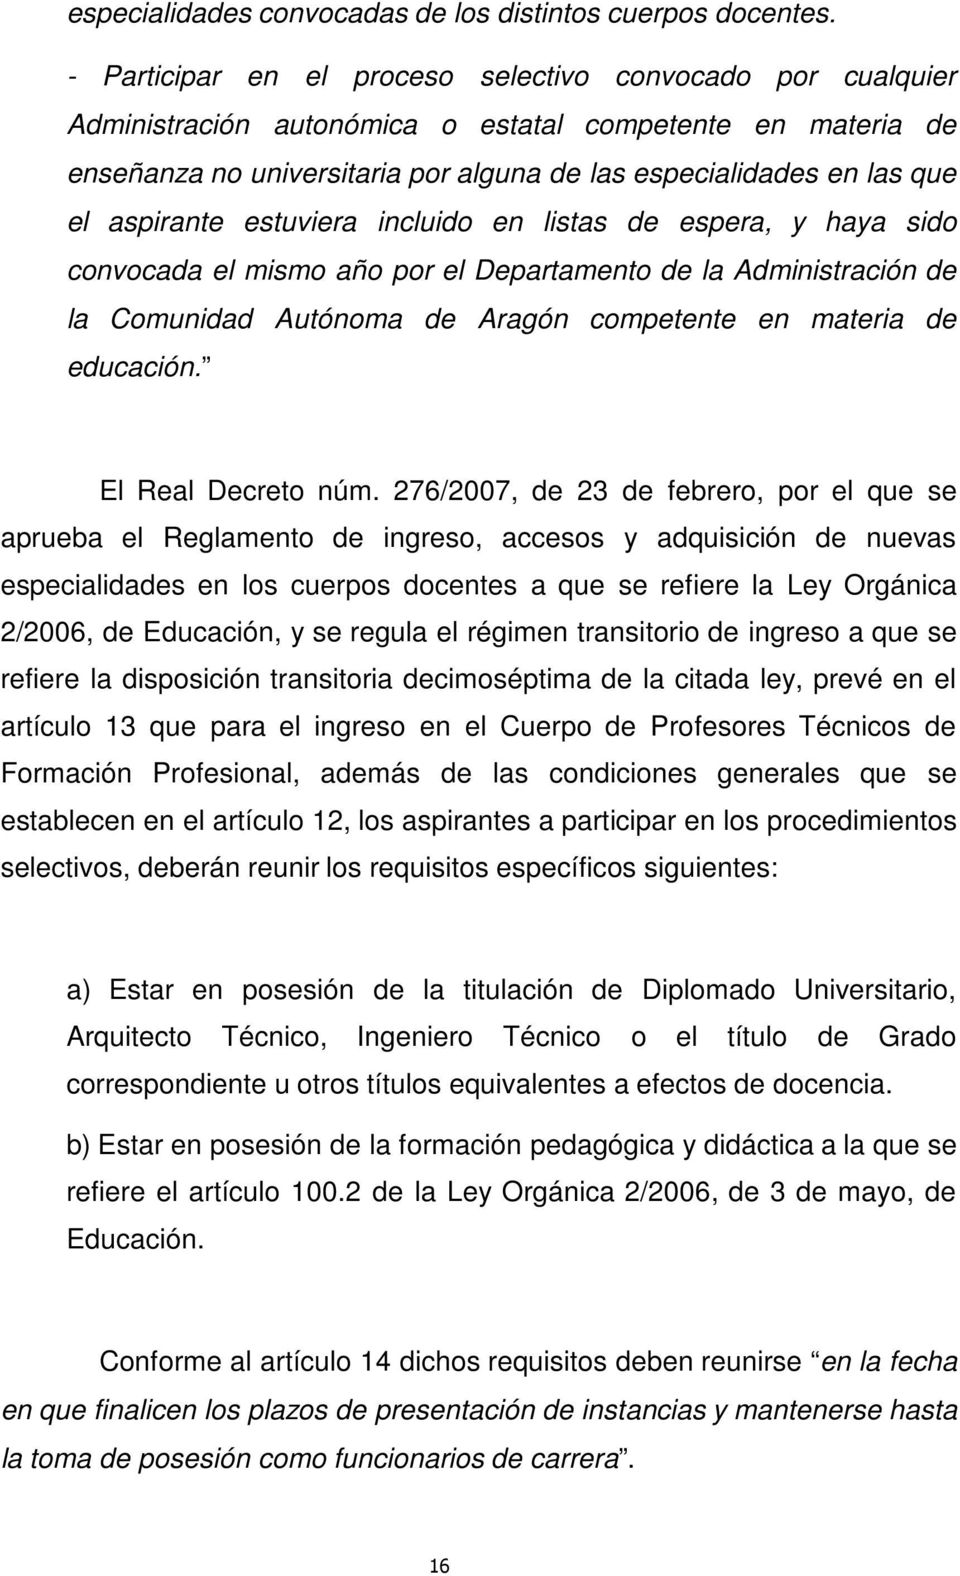 aspirante estuviera incluido en listas de espera, y haya sido convocada el mismo año por el Departamento de la Administración de la Comunidad Autónoma de Aragón competente en materia de educación.